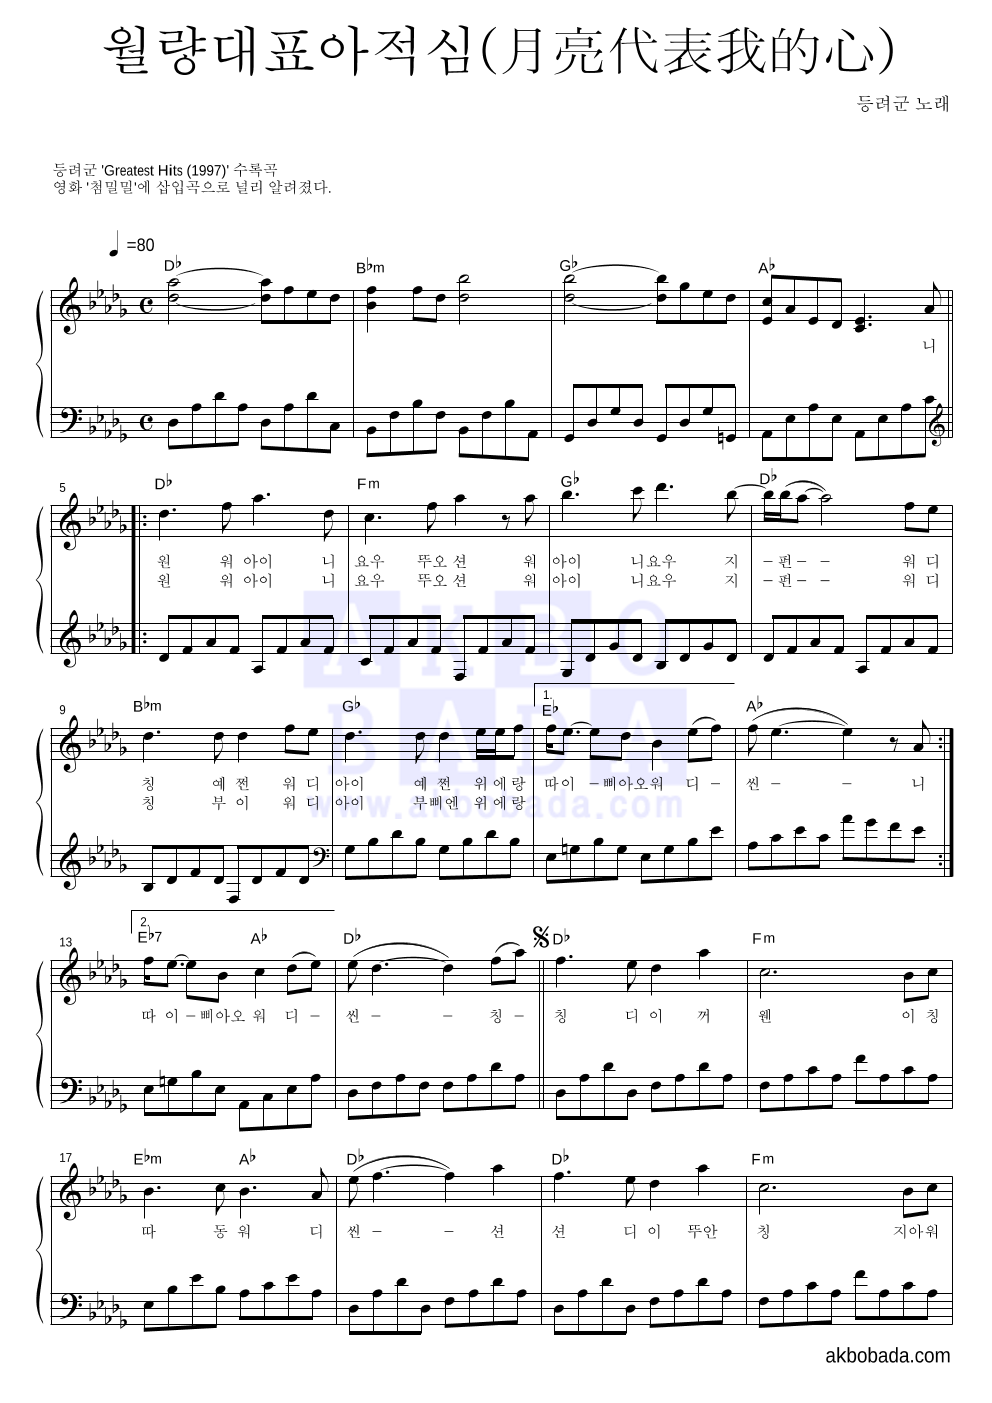 등려군(鄧麗筠) - 월량대표아적심 (月亮代表我的心) 피아노 2단 악보 